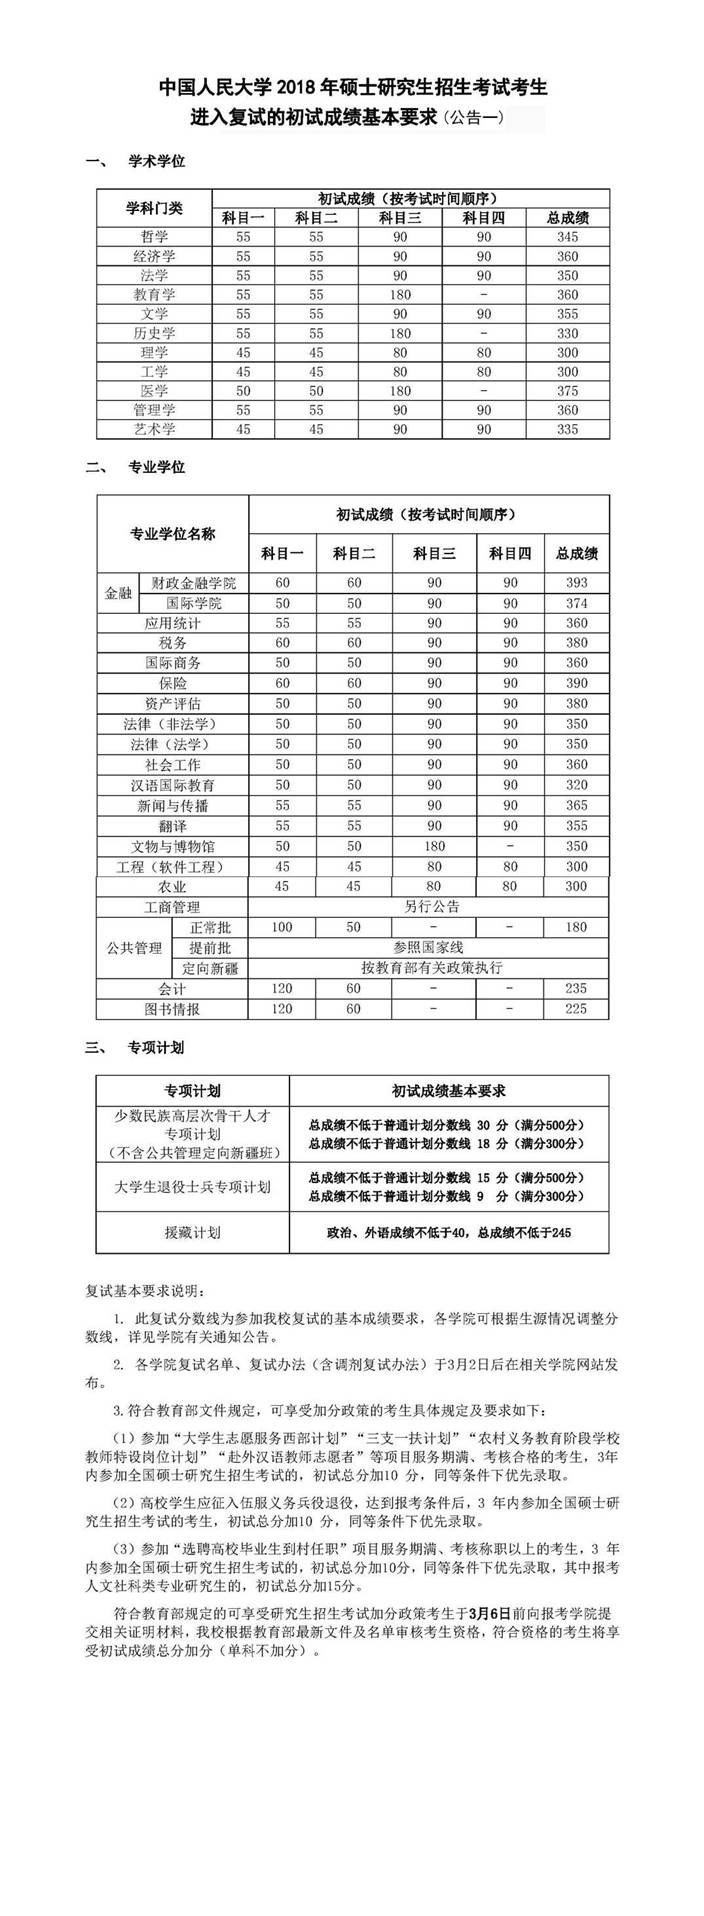 快讯:中国人民大学2018考研复试分数线